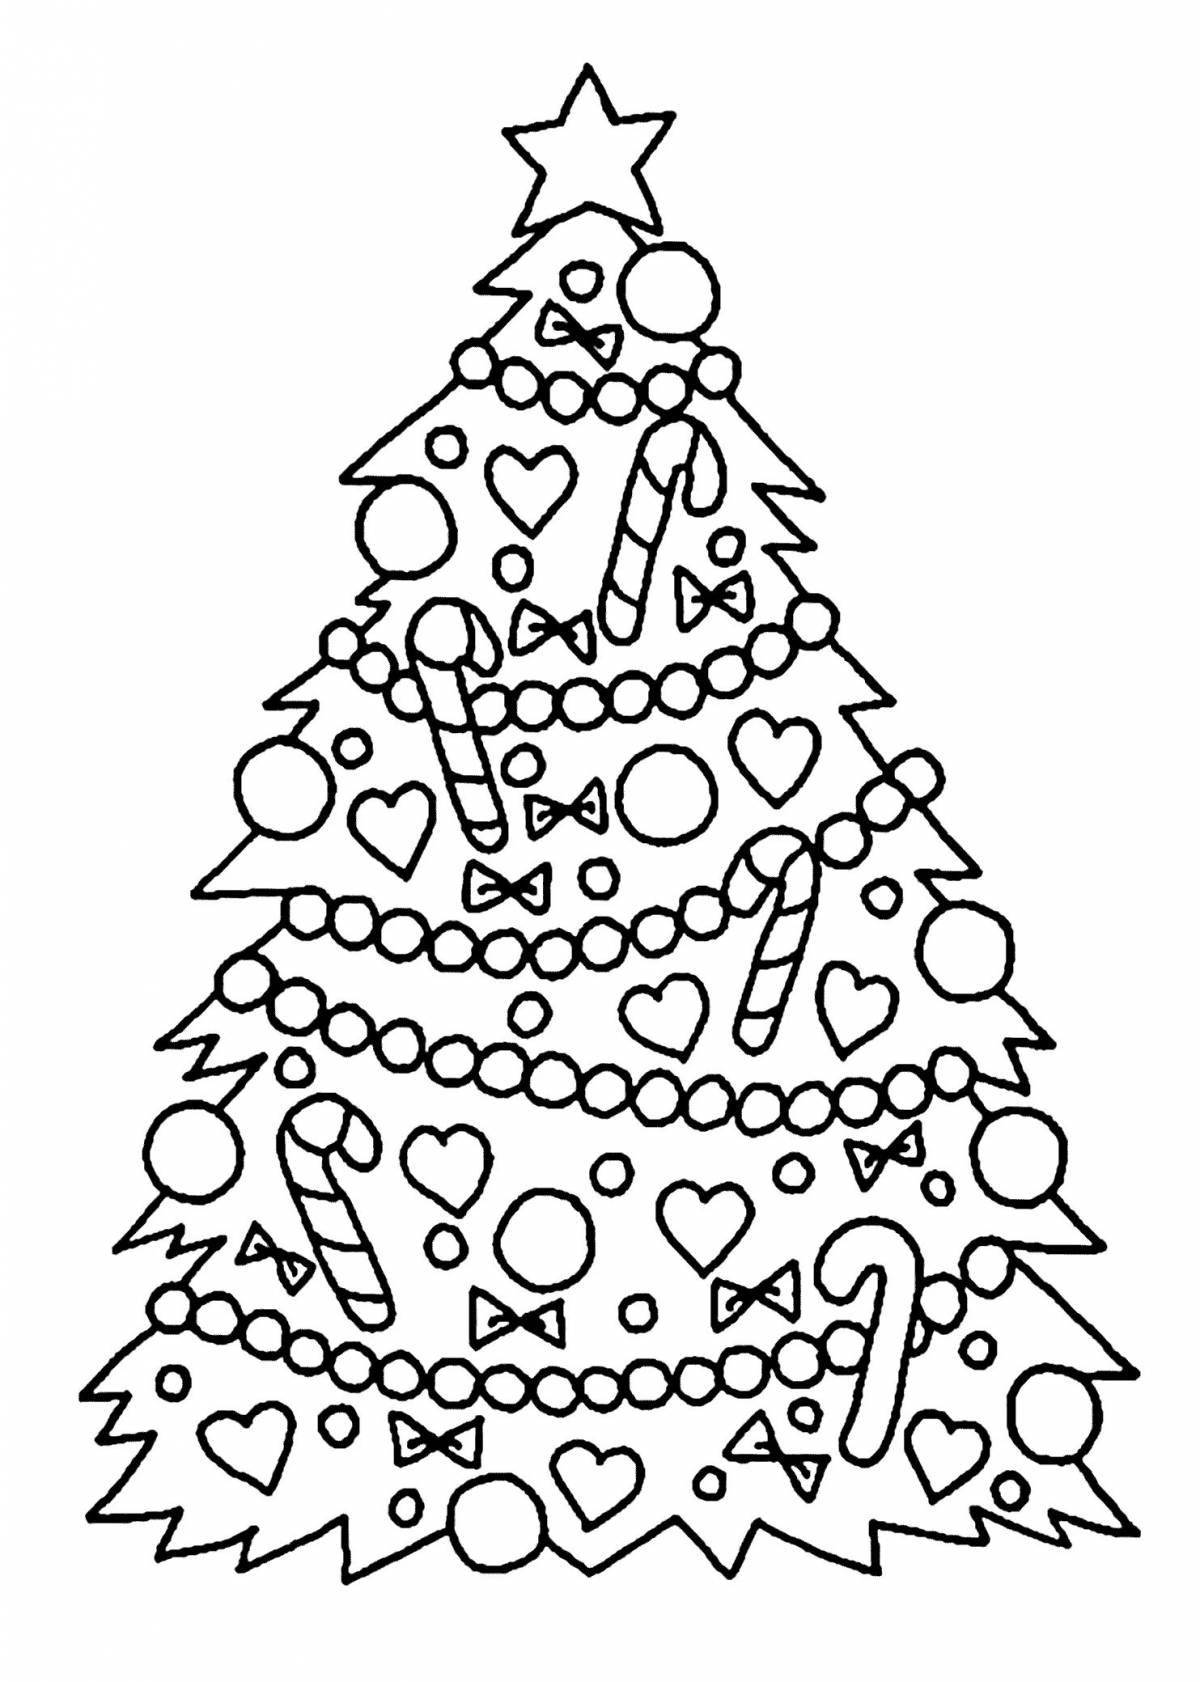 Очаровательная раскраска рождественской елки для детей 3-4 лет